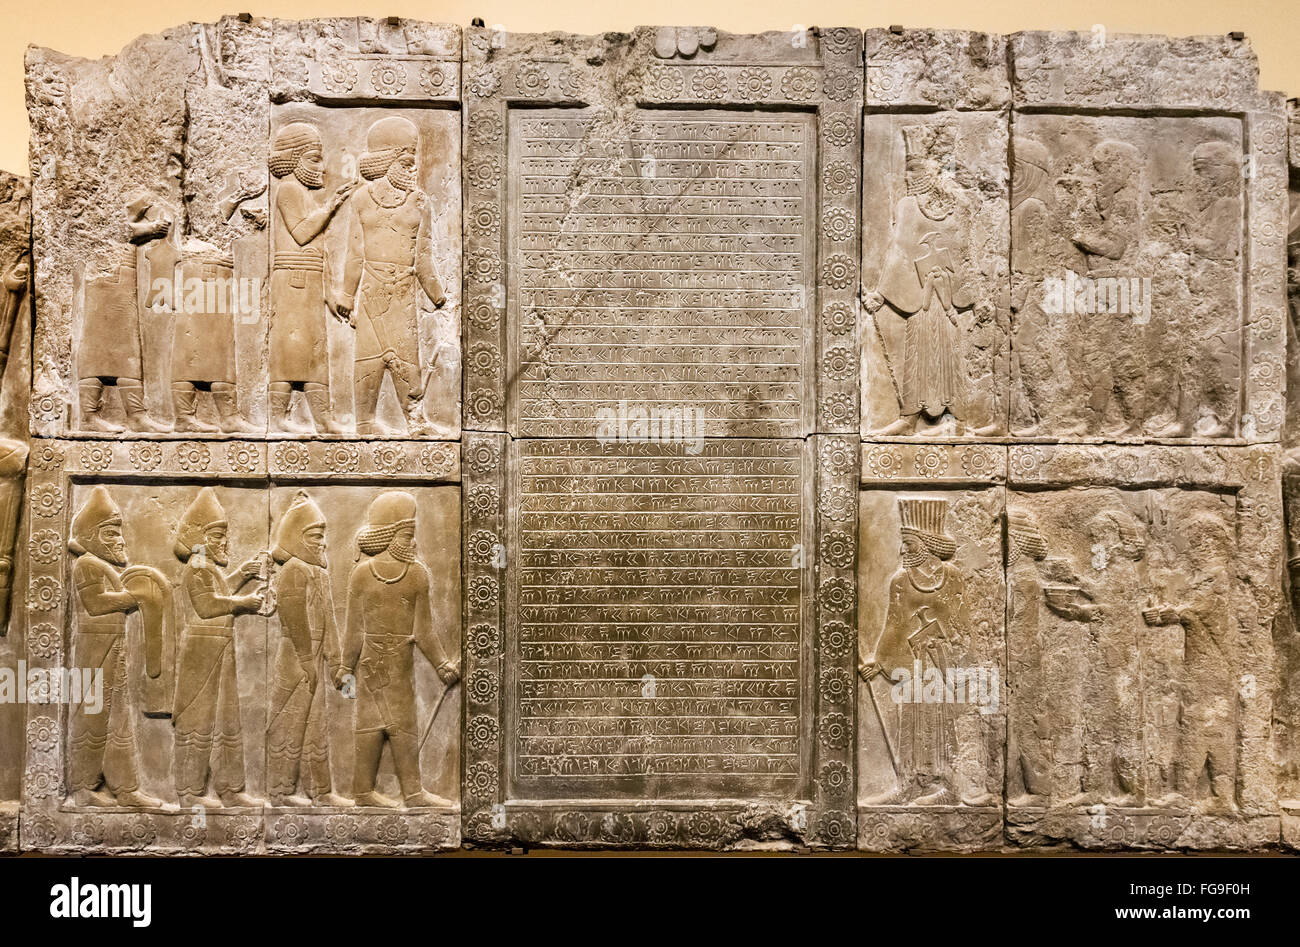 Plaster cast of exterior of Palace of Darius at Persepolis (518-339 BC), Achaemenid Empire. British Museum, London, UK Stock Photo